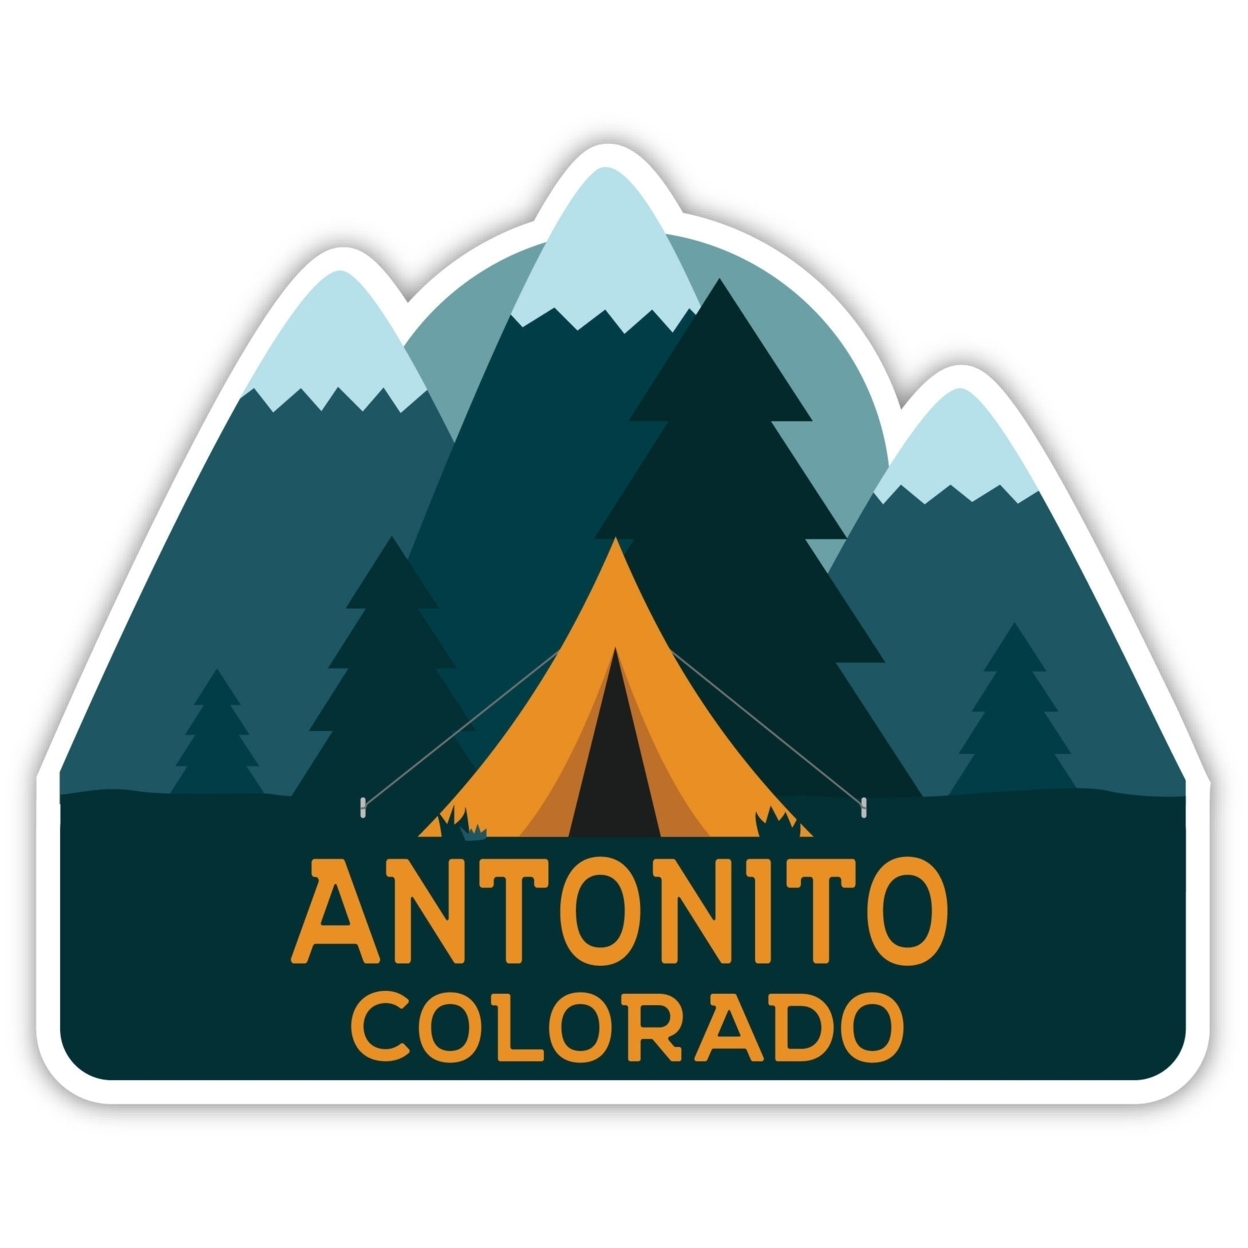 Antonito Colorado Souvenir Decorative Stickers (Choose Theme And Size) - Single Unit, 6-Inch, Tent